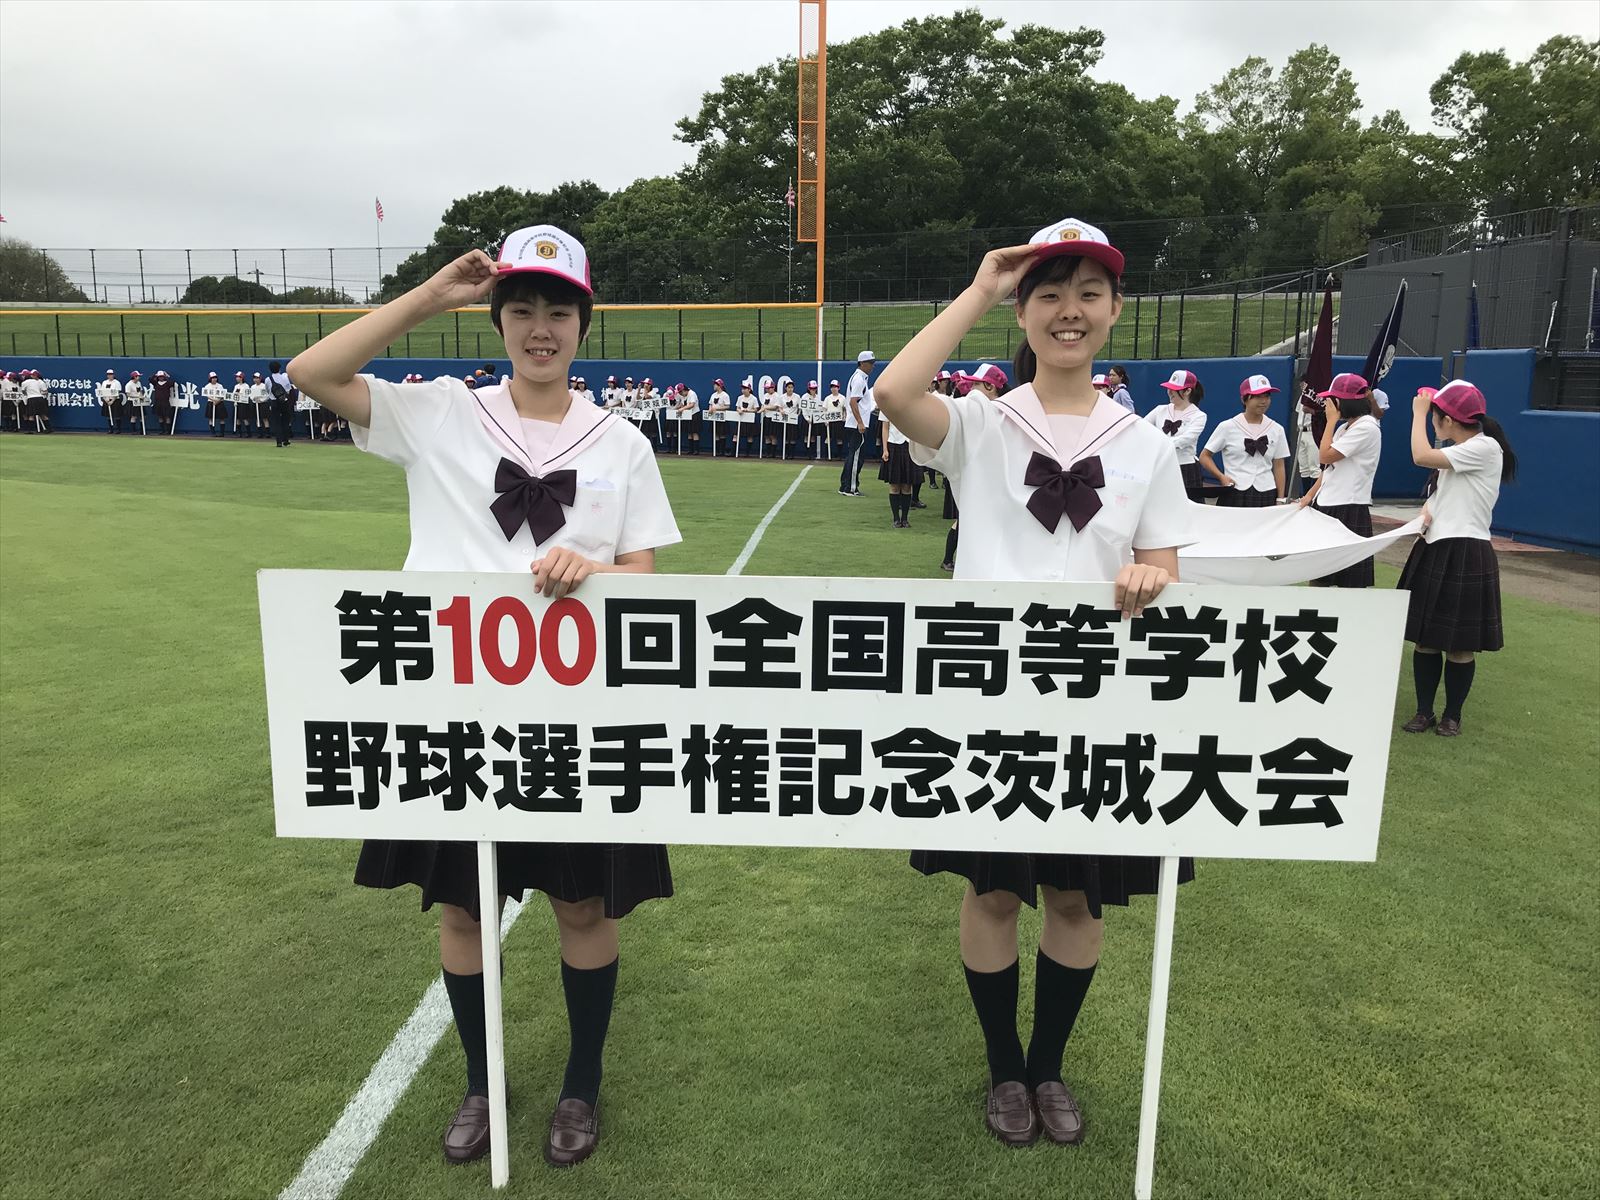 水戸女子ホッとニュース | 水戸女子高等学校 » 茨城県高校野球 ...